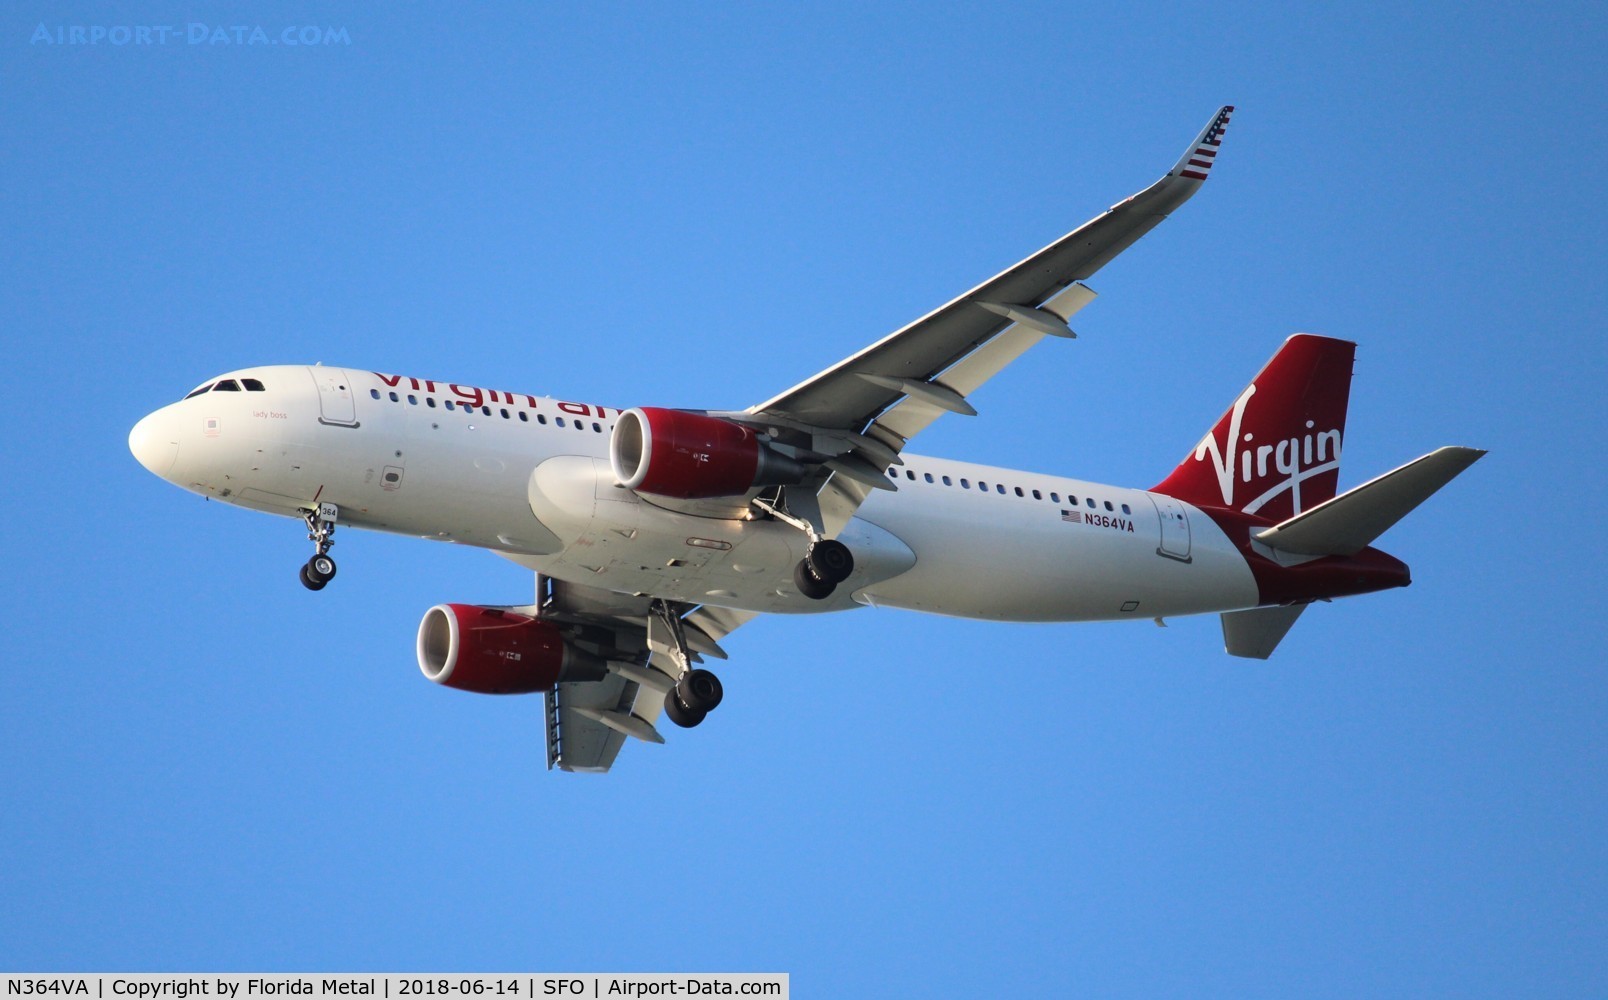 N364VA, 2016 Airbus A320-214 C/N 7138, Virgin America